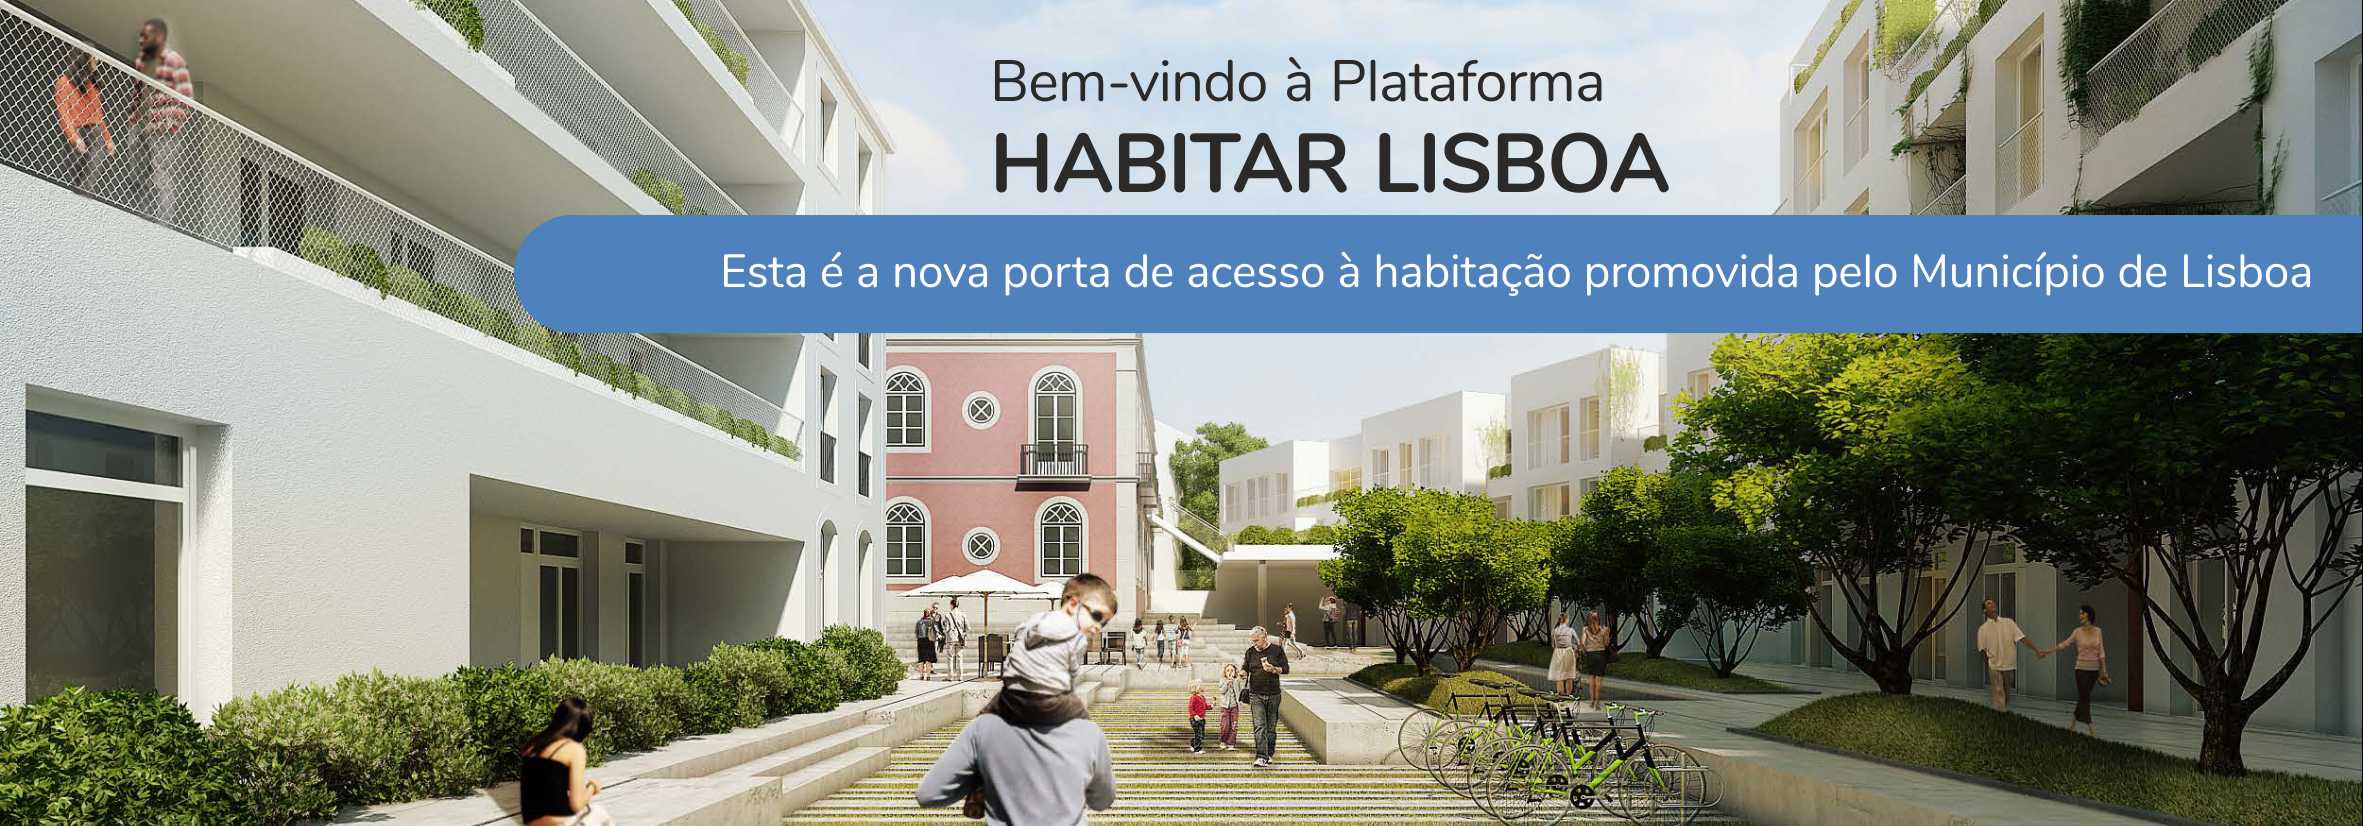 Plataforma Habitar Lisboa